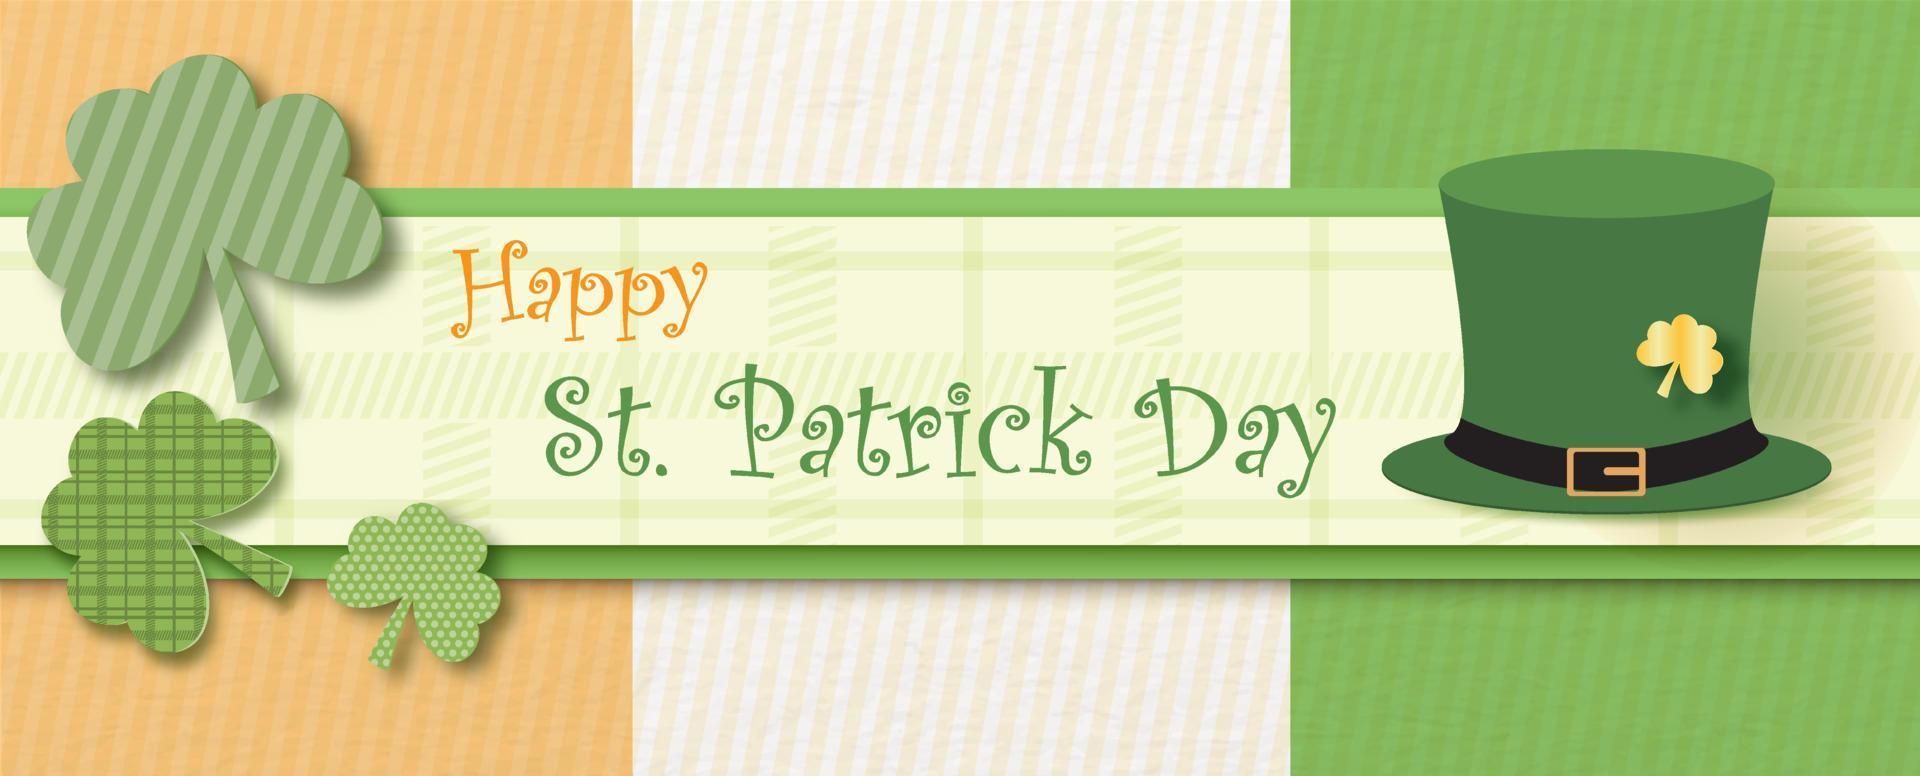 vitklöver växter deign med hög hatt och Lycklig st. patrick dag lydelse på färger av irländsk flagga. helgon Patricks dag hälsning kort och affisch i papper skära stil och vektor design.